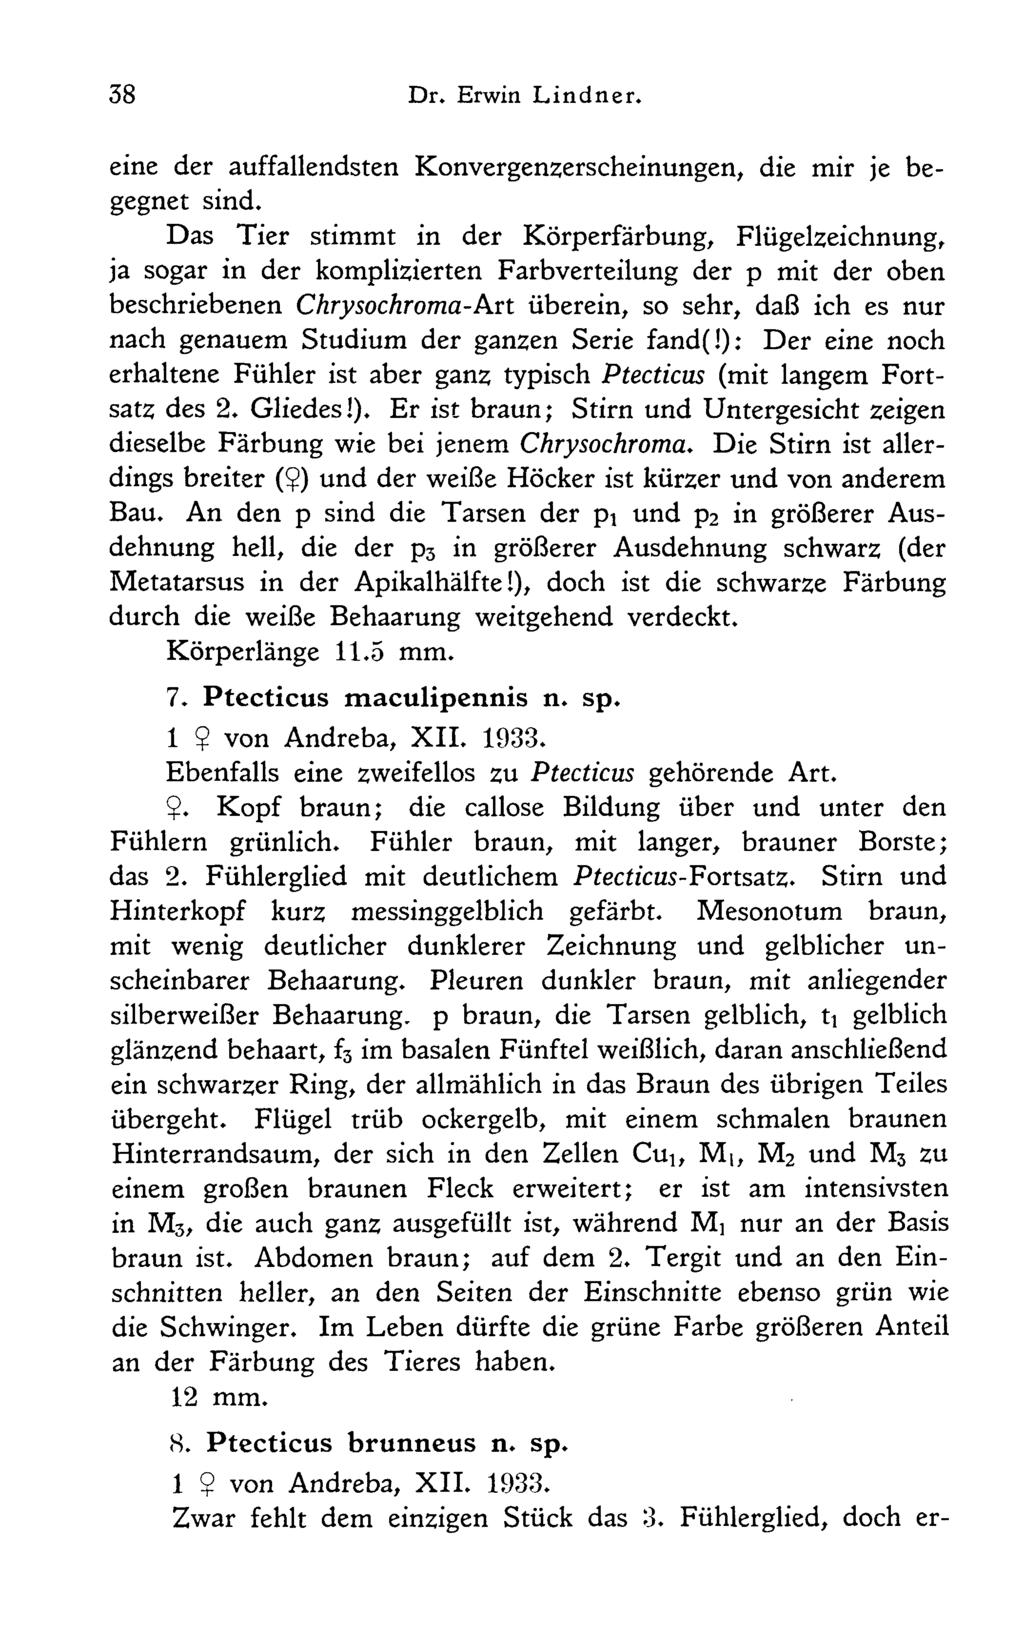 (S. Ptecticus brunneus n. sp. 1 $ von Andreba, XII. 1933. Zwar fehlt dem einzigen Stück das 3. Fühlerglied, doch erdownload unter www.biologiezentrum.at 38 Dr. Erwin Lindner.